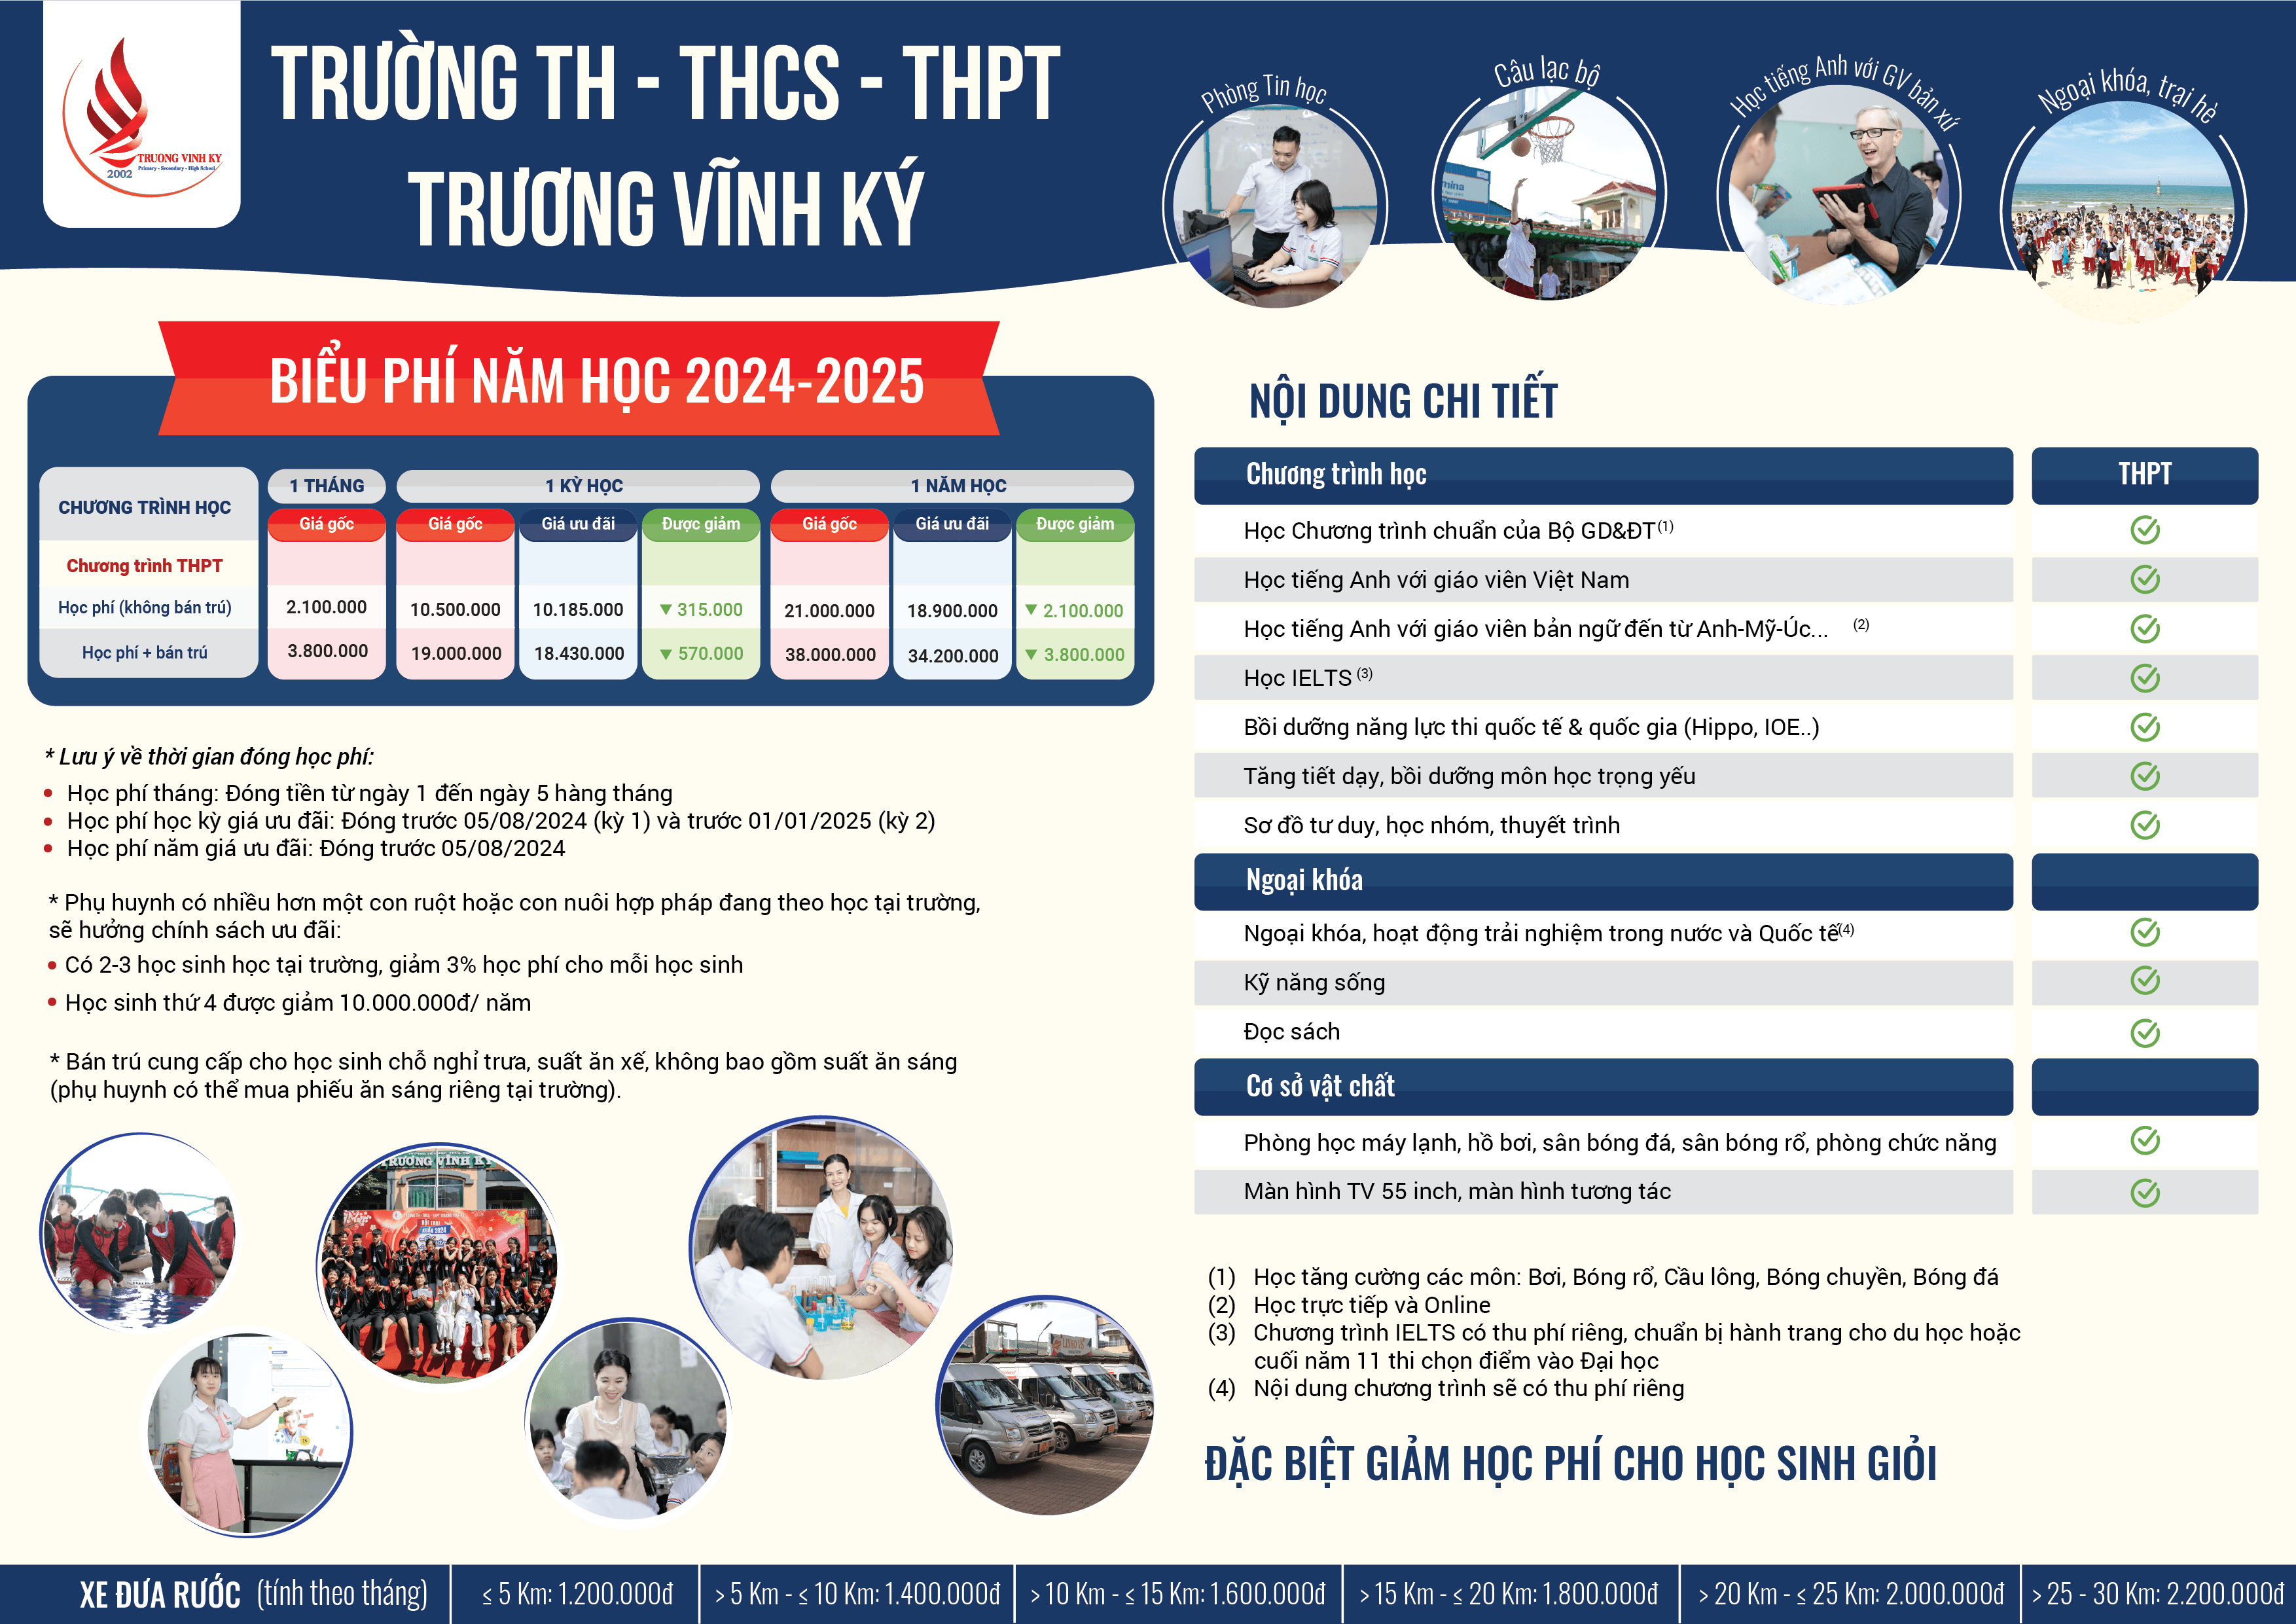 biểu phí trường Trương Vĩnh Ký 2024-2025